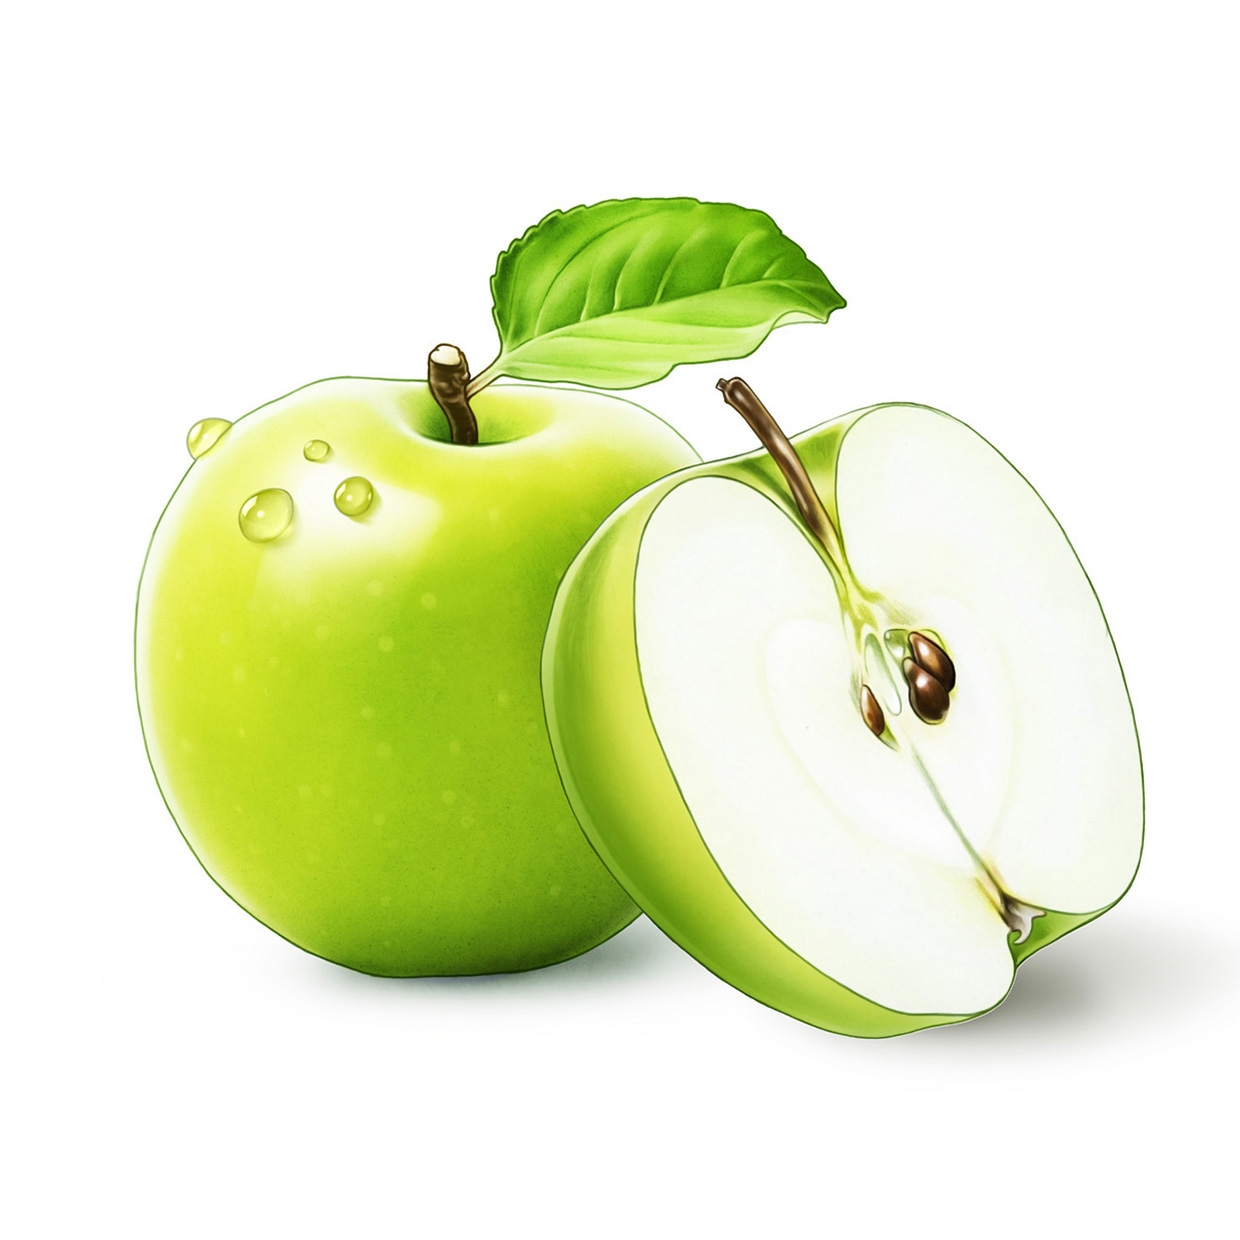 Apple for läkerol lozenge package Malus domestica äppelsmak äpple blad växt